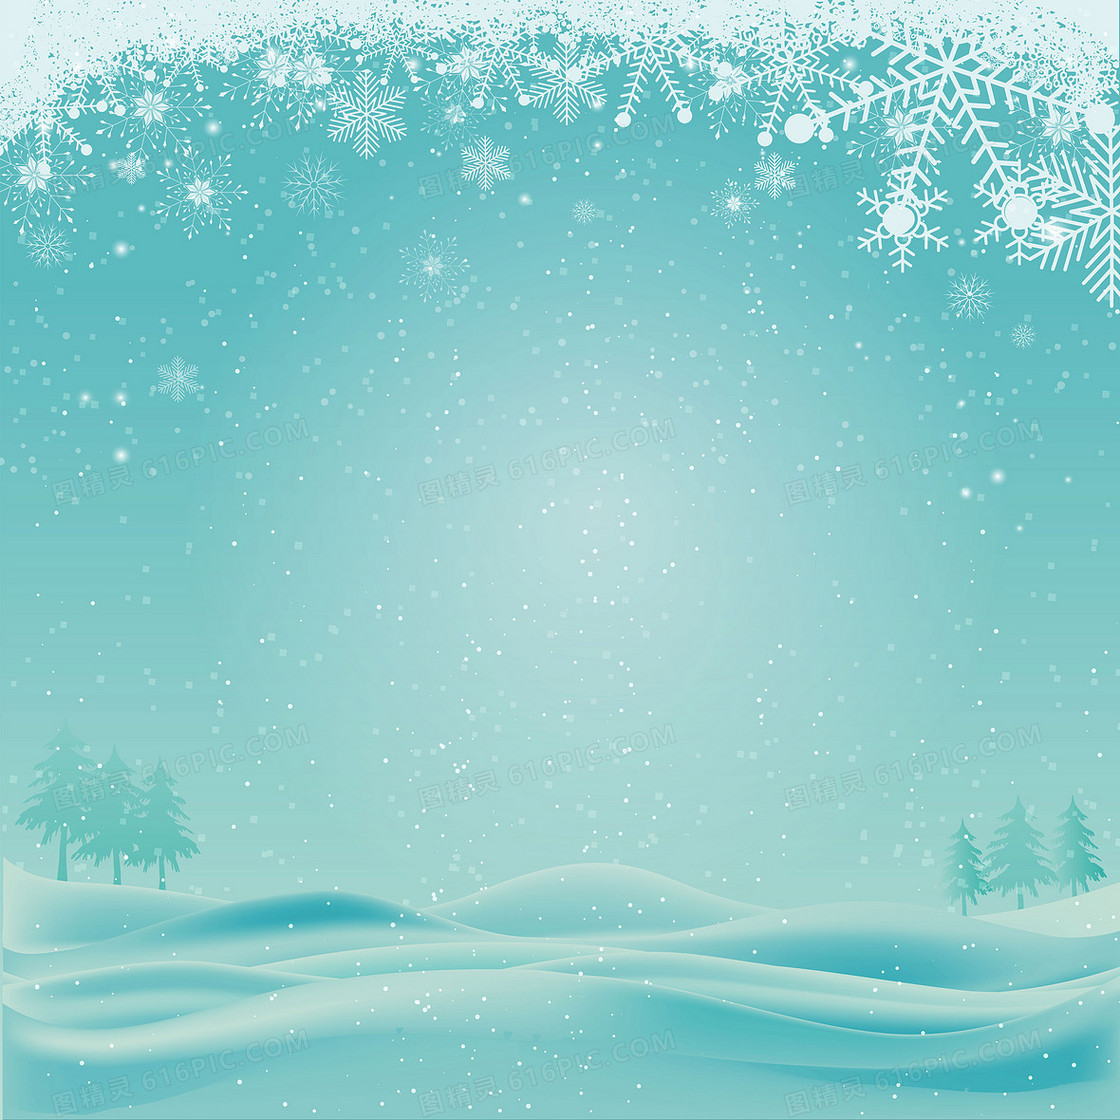 蓝色冬季雪原圣诞贺卡矢量背景